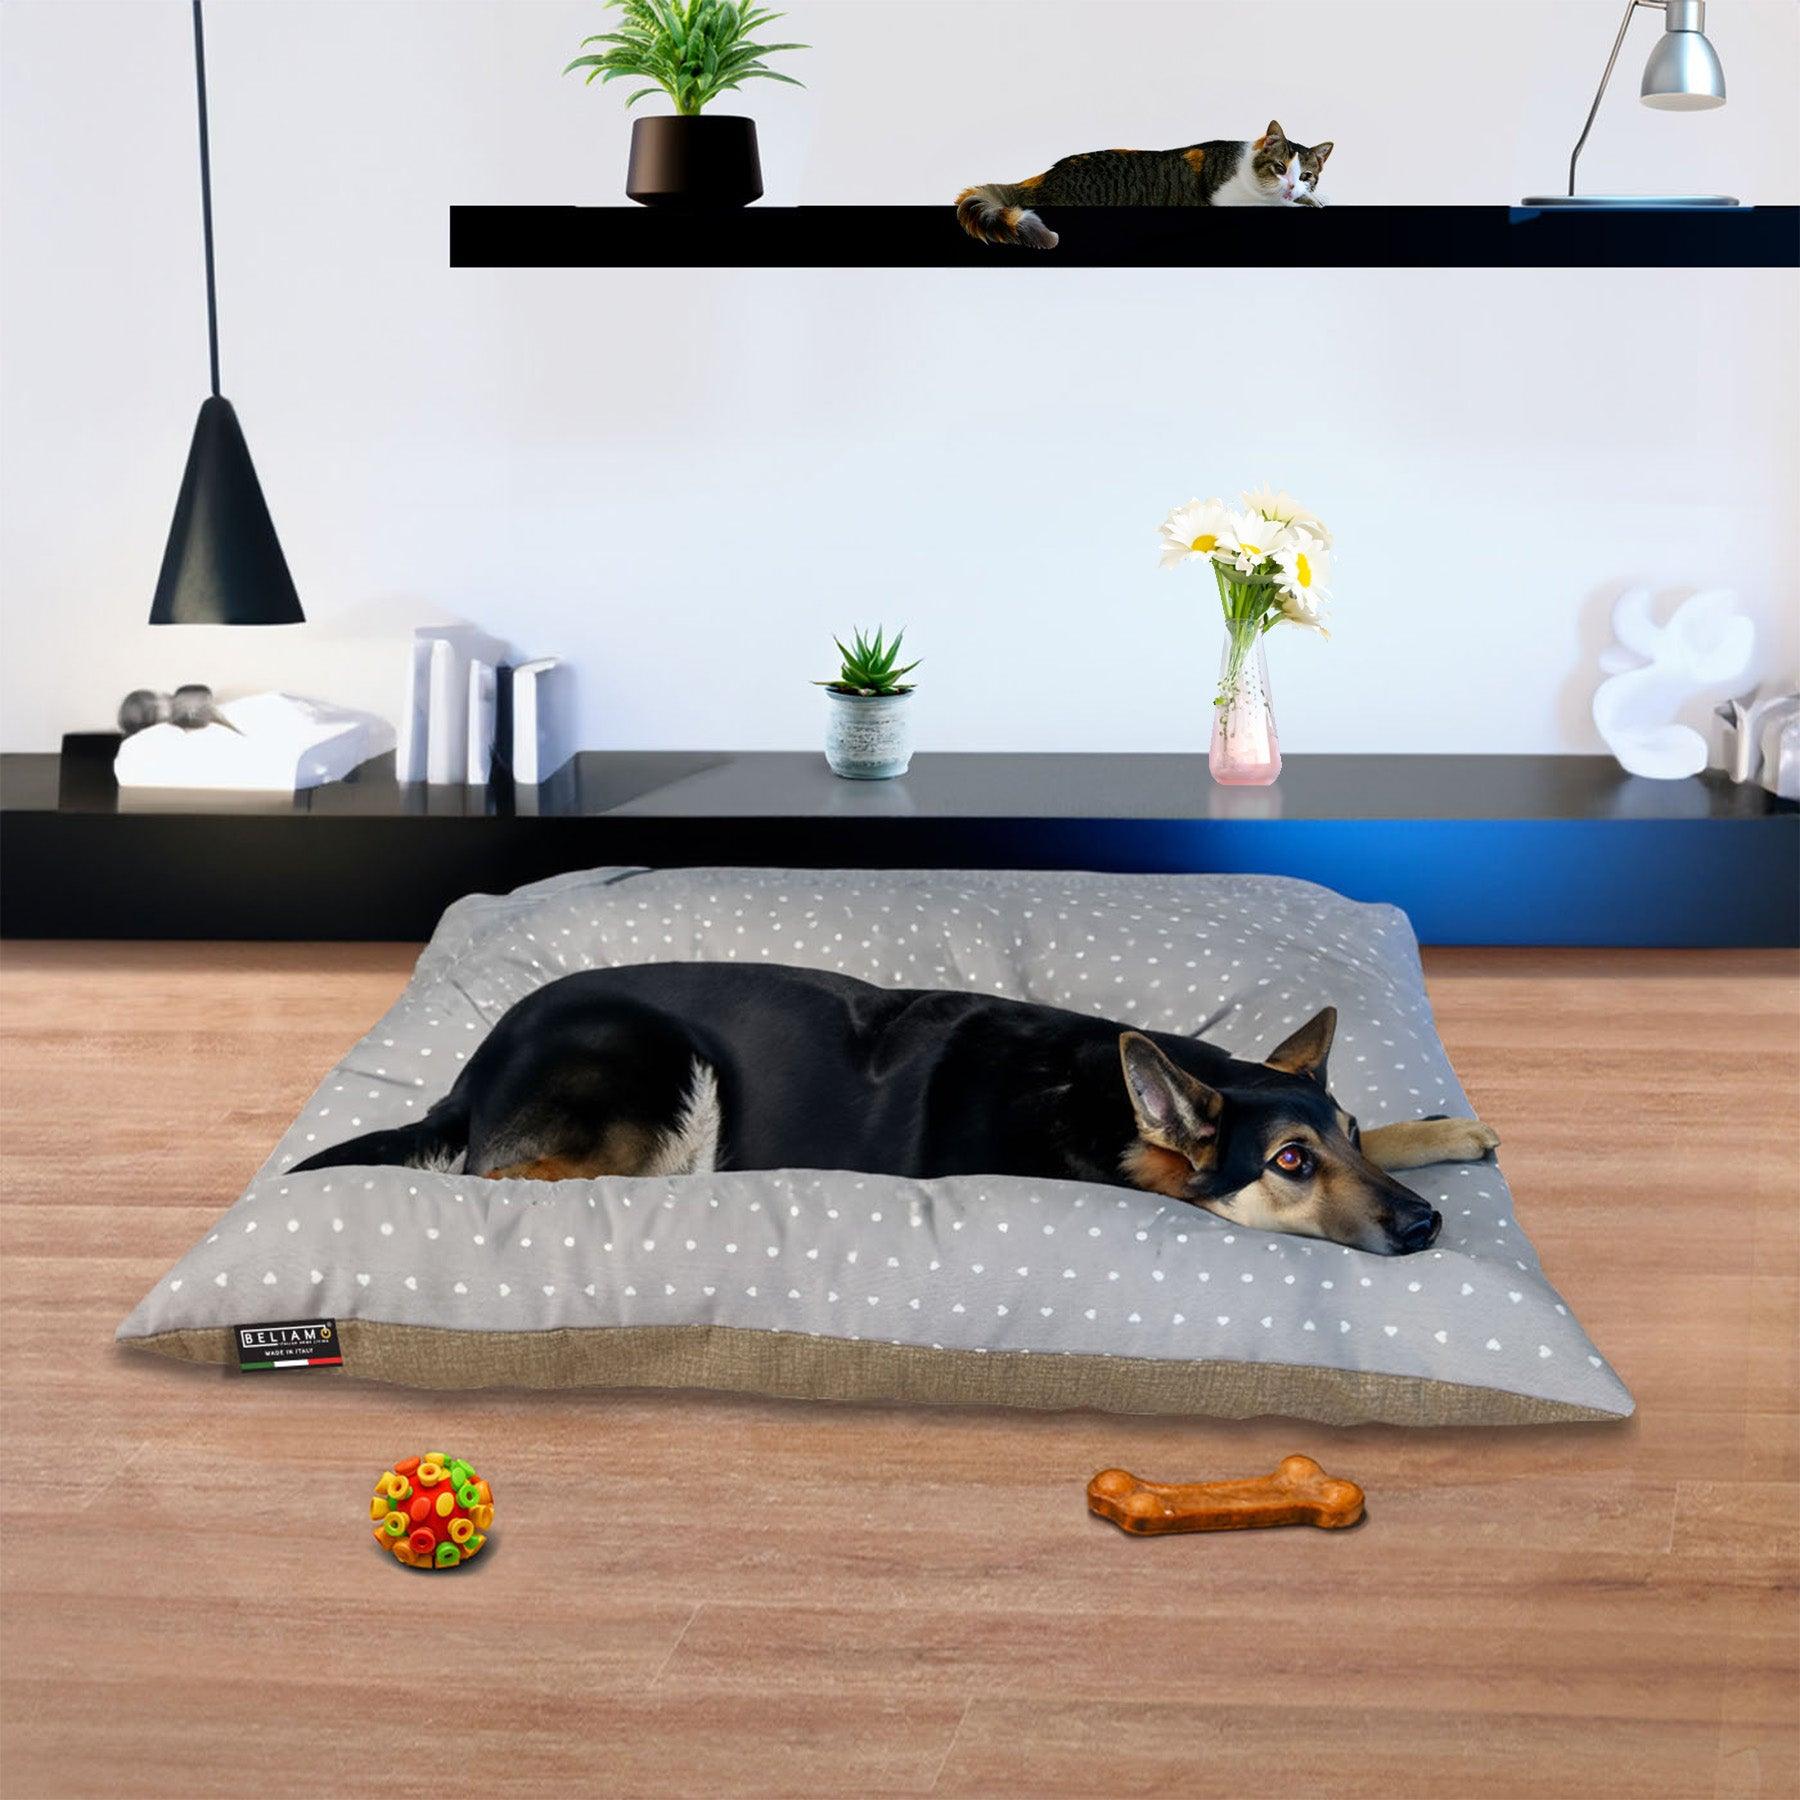 Cuscino antigraffio Pippo di Beliamo, ideale per cani e gatti, progettato per offrire un riposo confortevole e sicuro